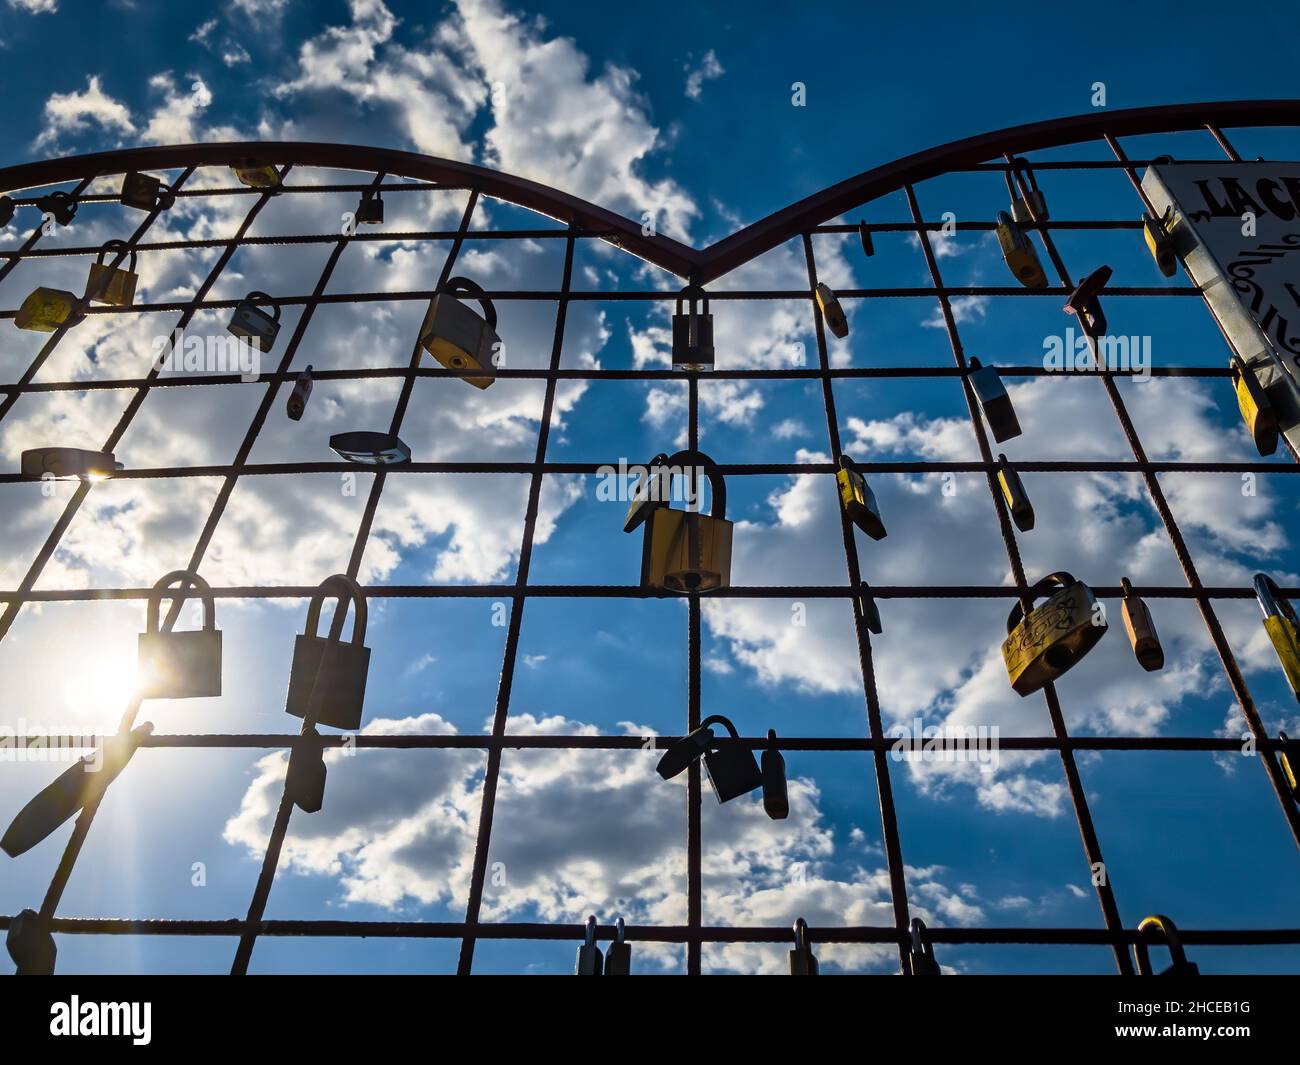 Scatto ad angolo basso di una recinzione a forma di cuore con lucchetti su sfondo cielo nuvoloso Foto Stock